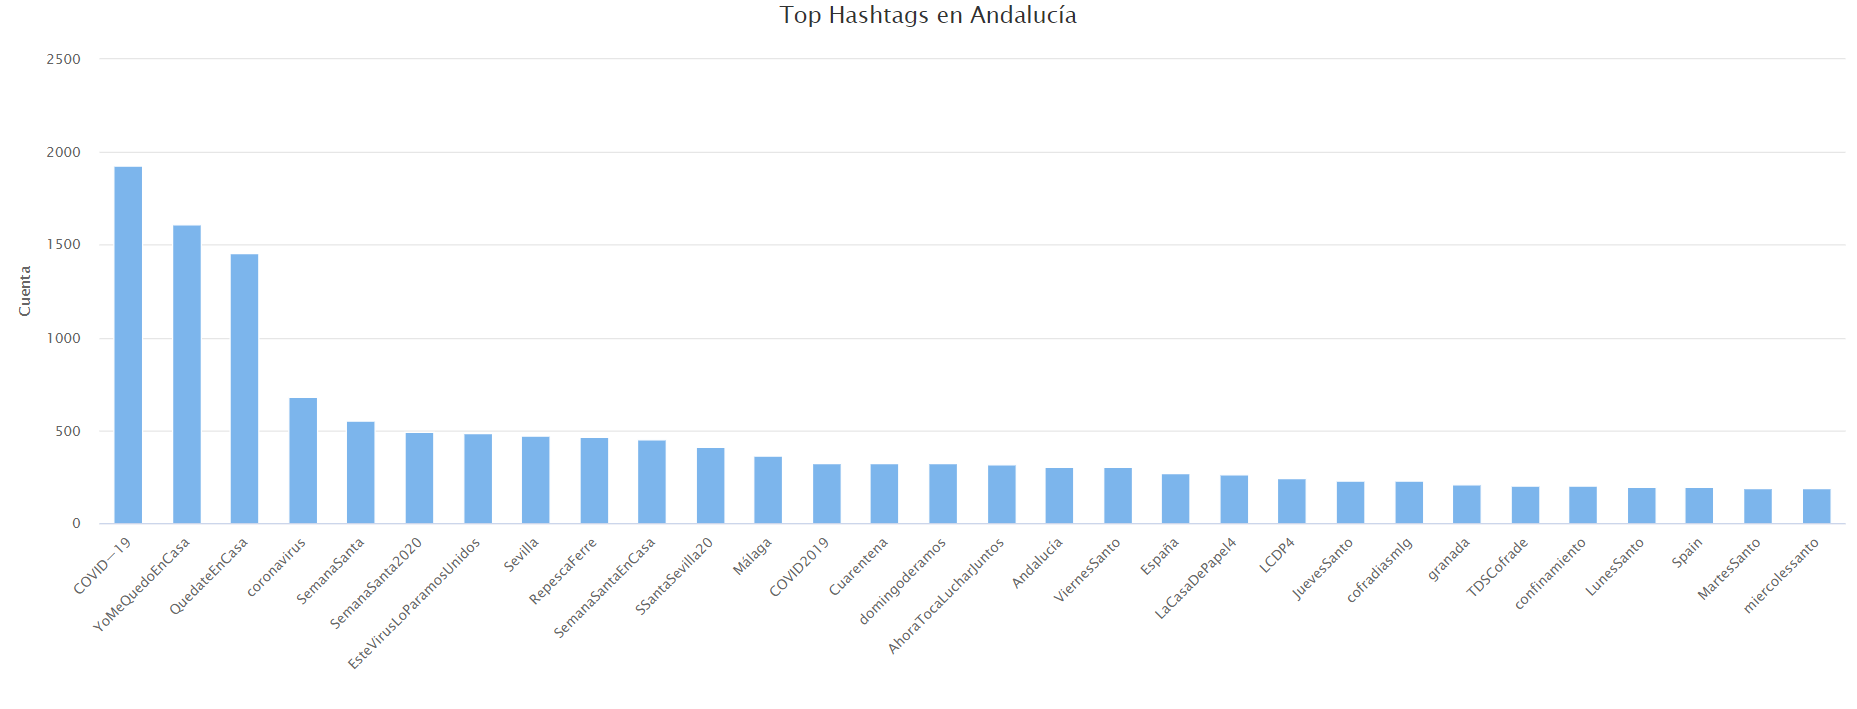 Hashtags más frecuentes en Andalucía